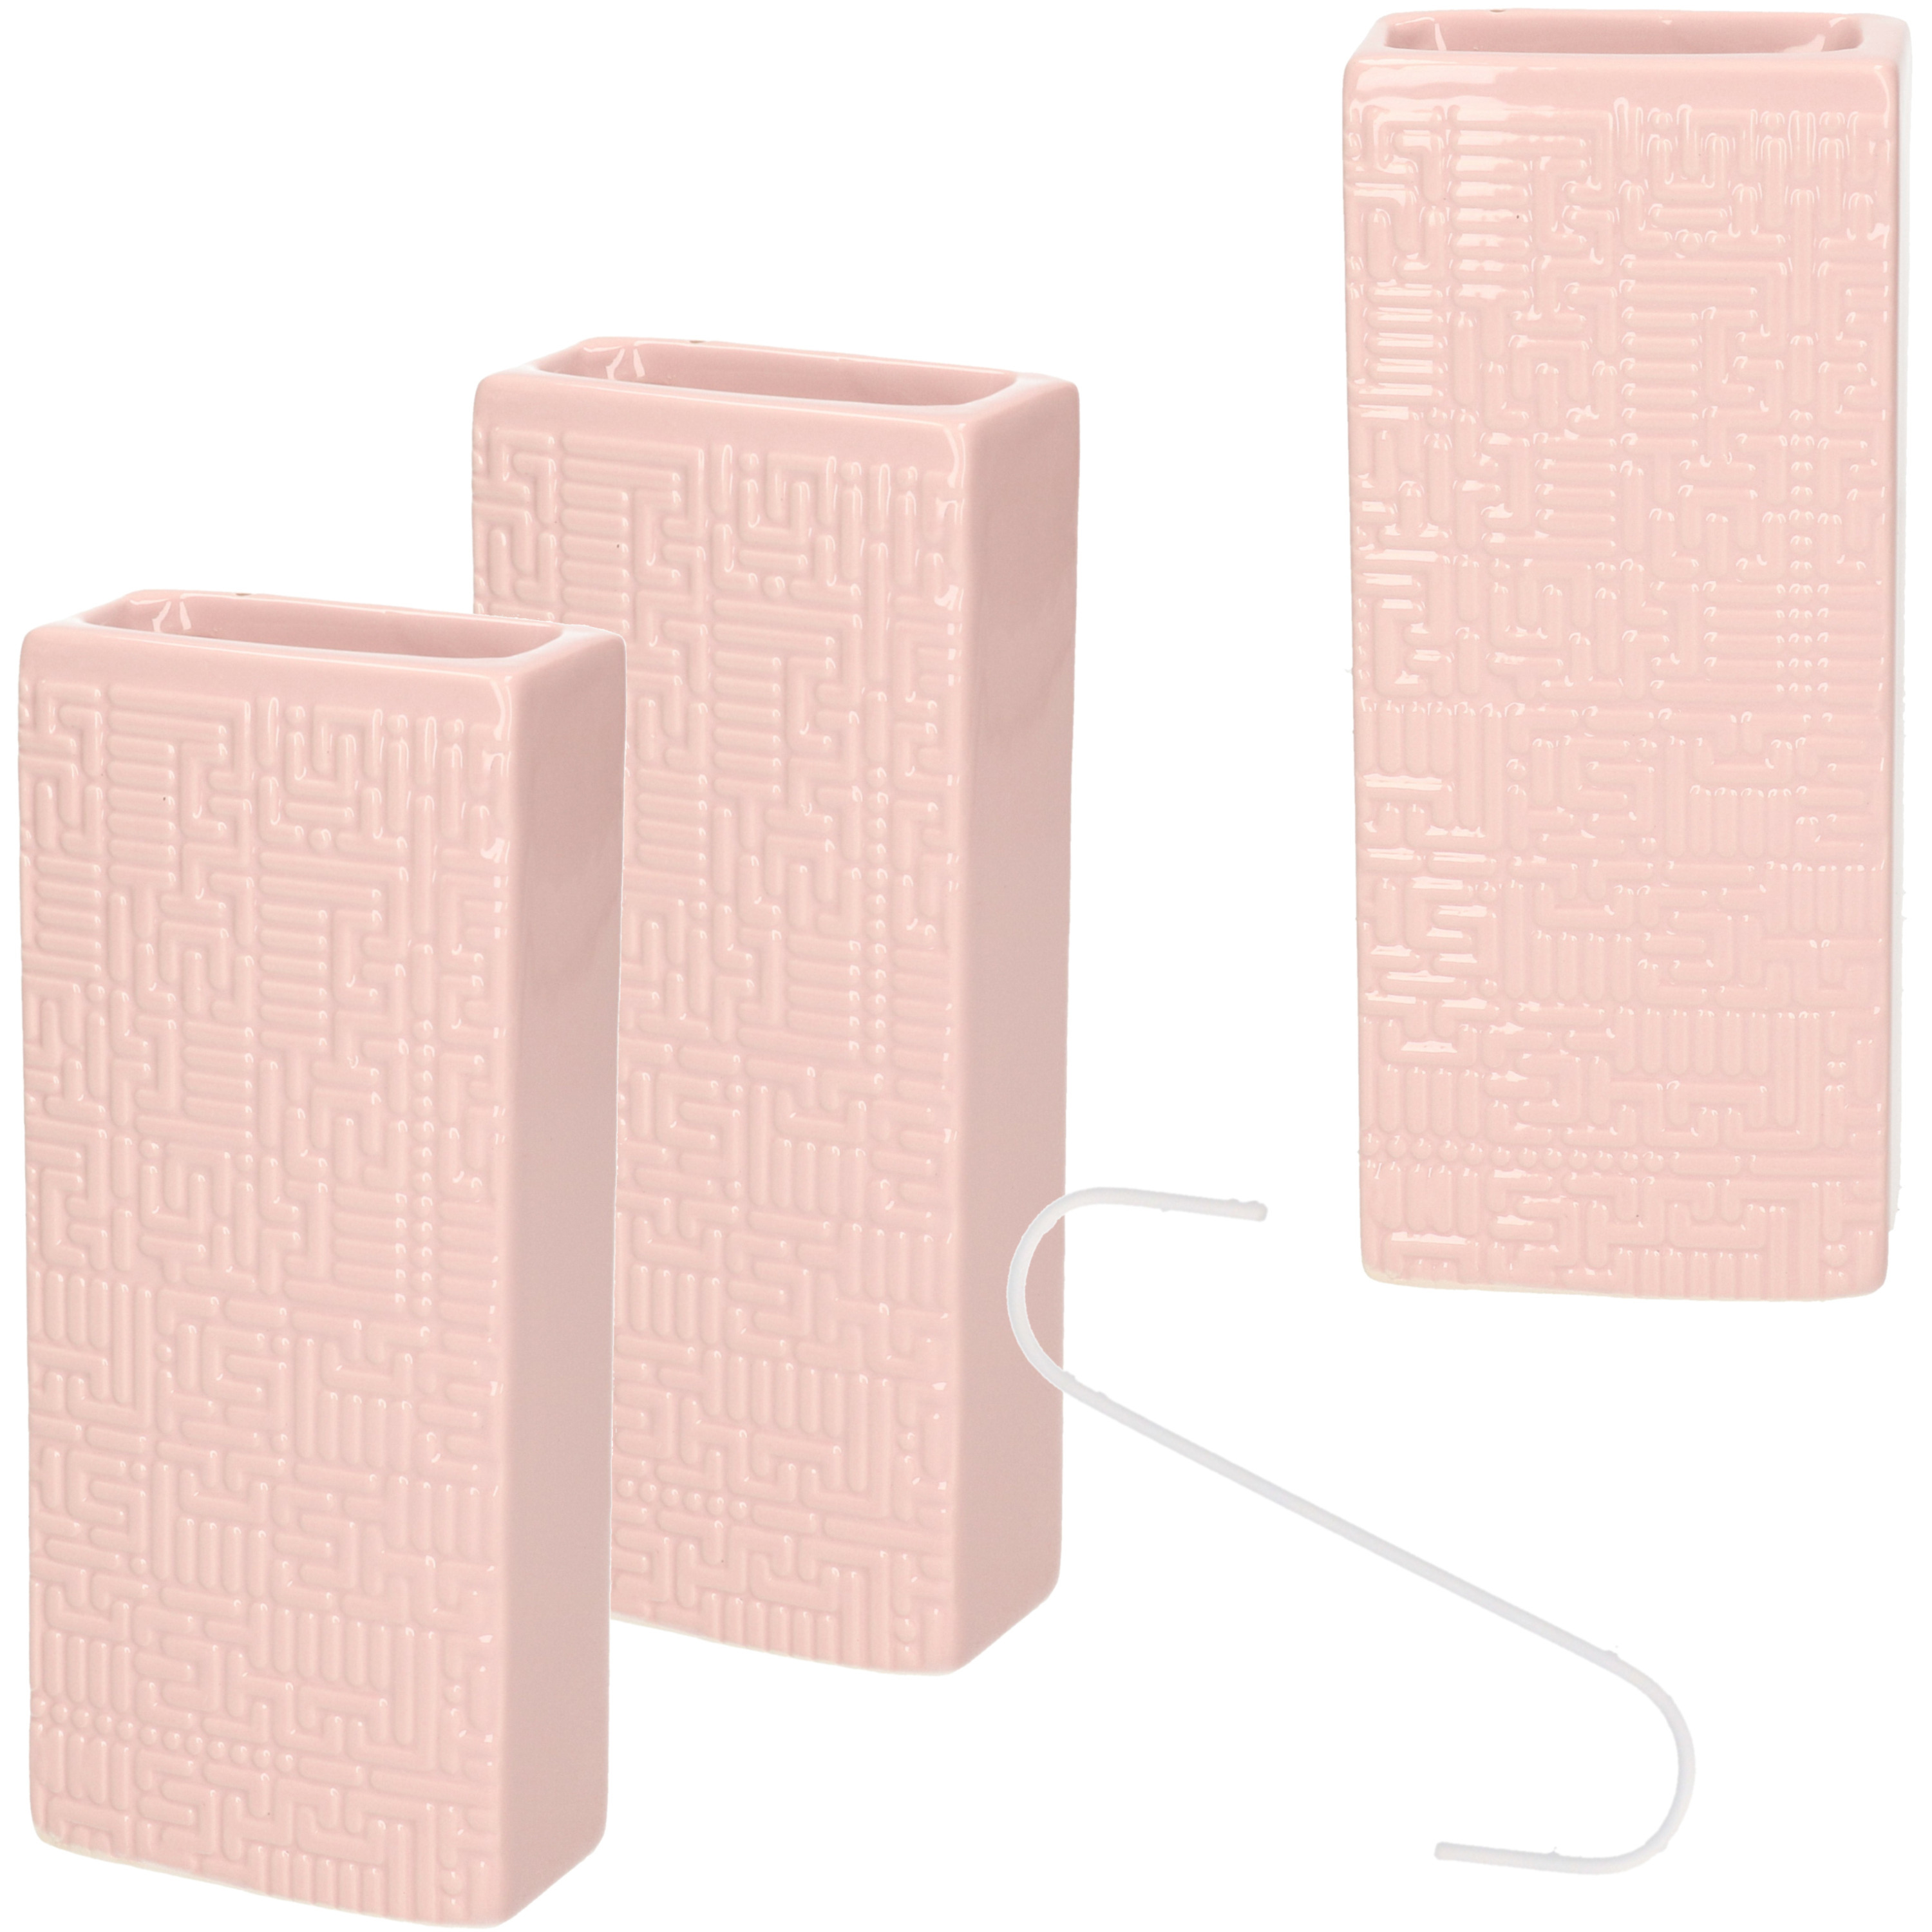 Roze luchtbevochtigers/waterverdampers 3x stuks aardewerk -